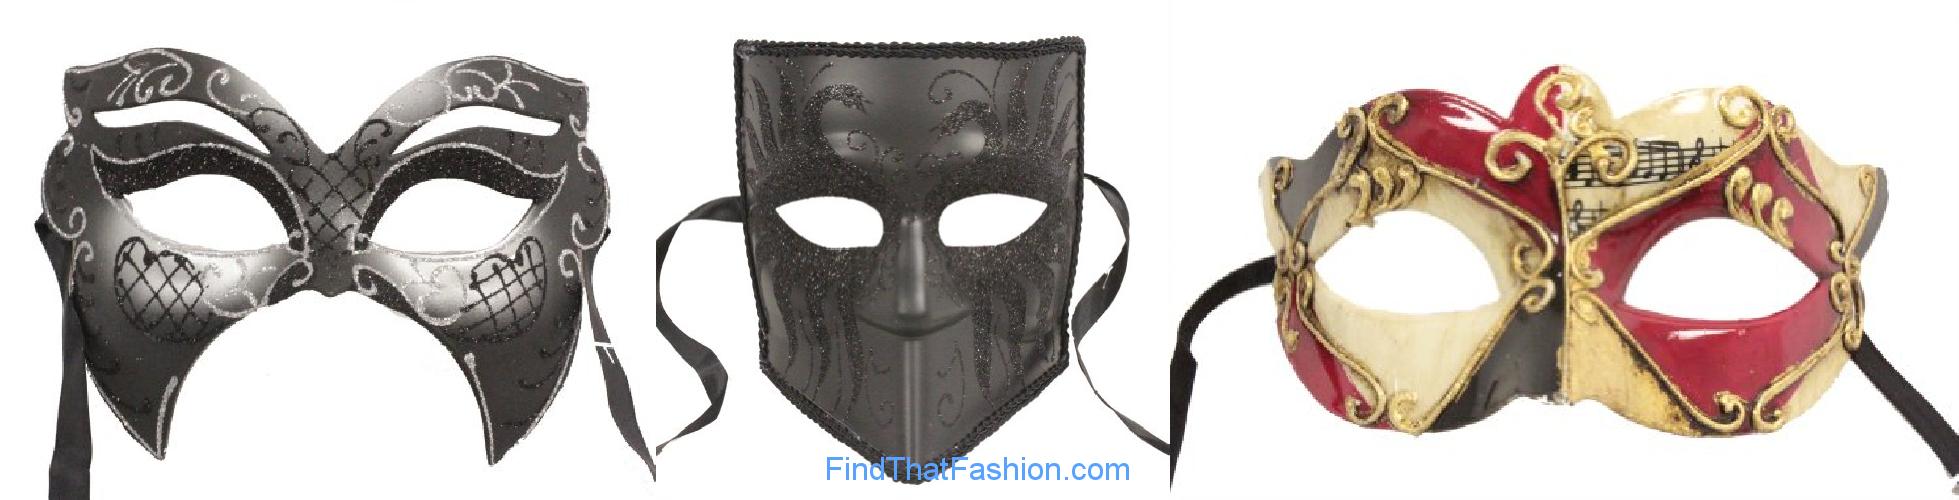 RedSkyTrader Masquerade Masks